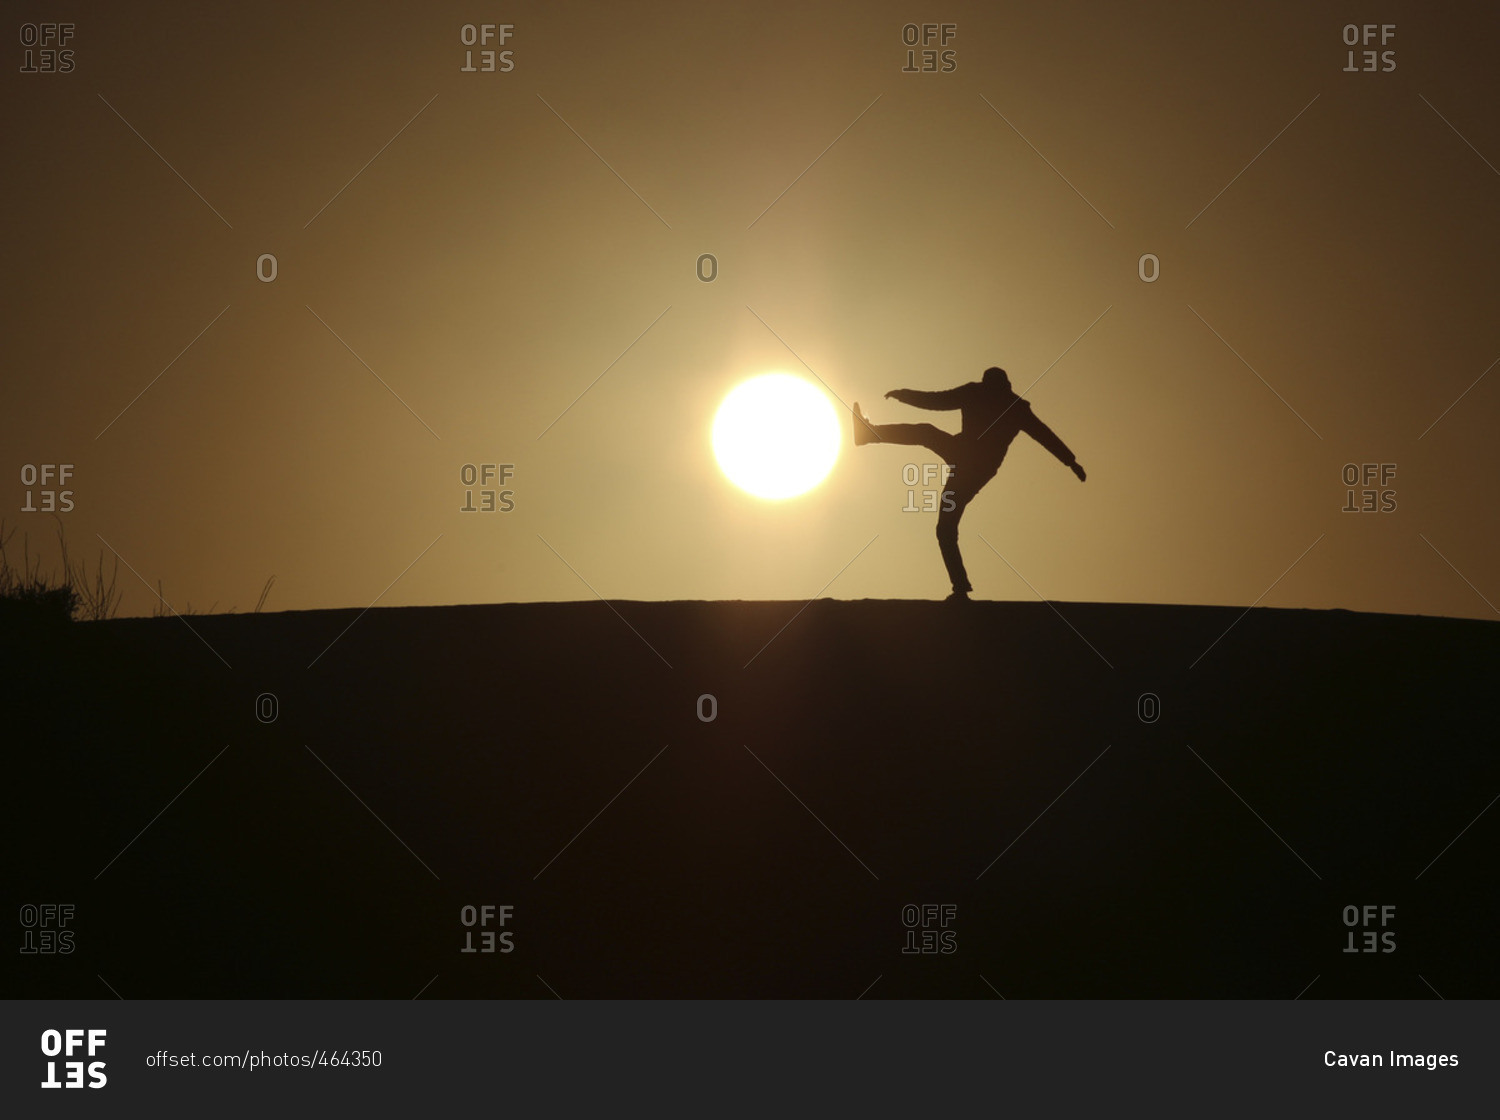 Optical illusion of silhouette man kicking sun during sunset